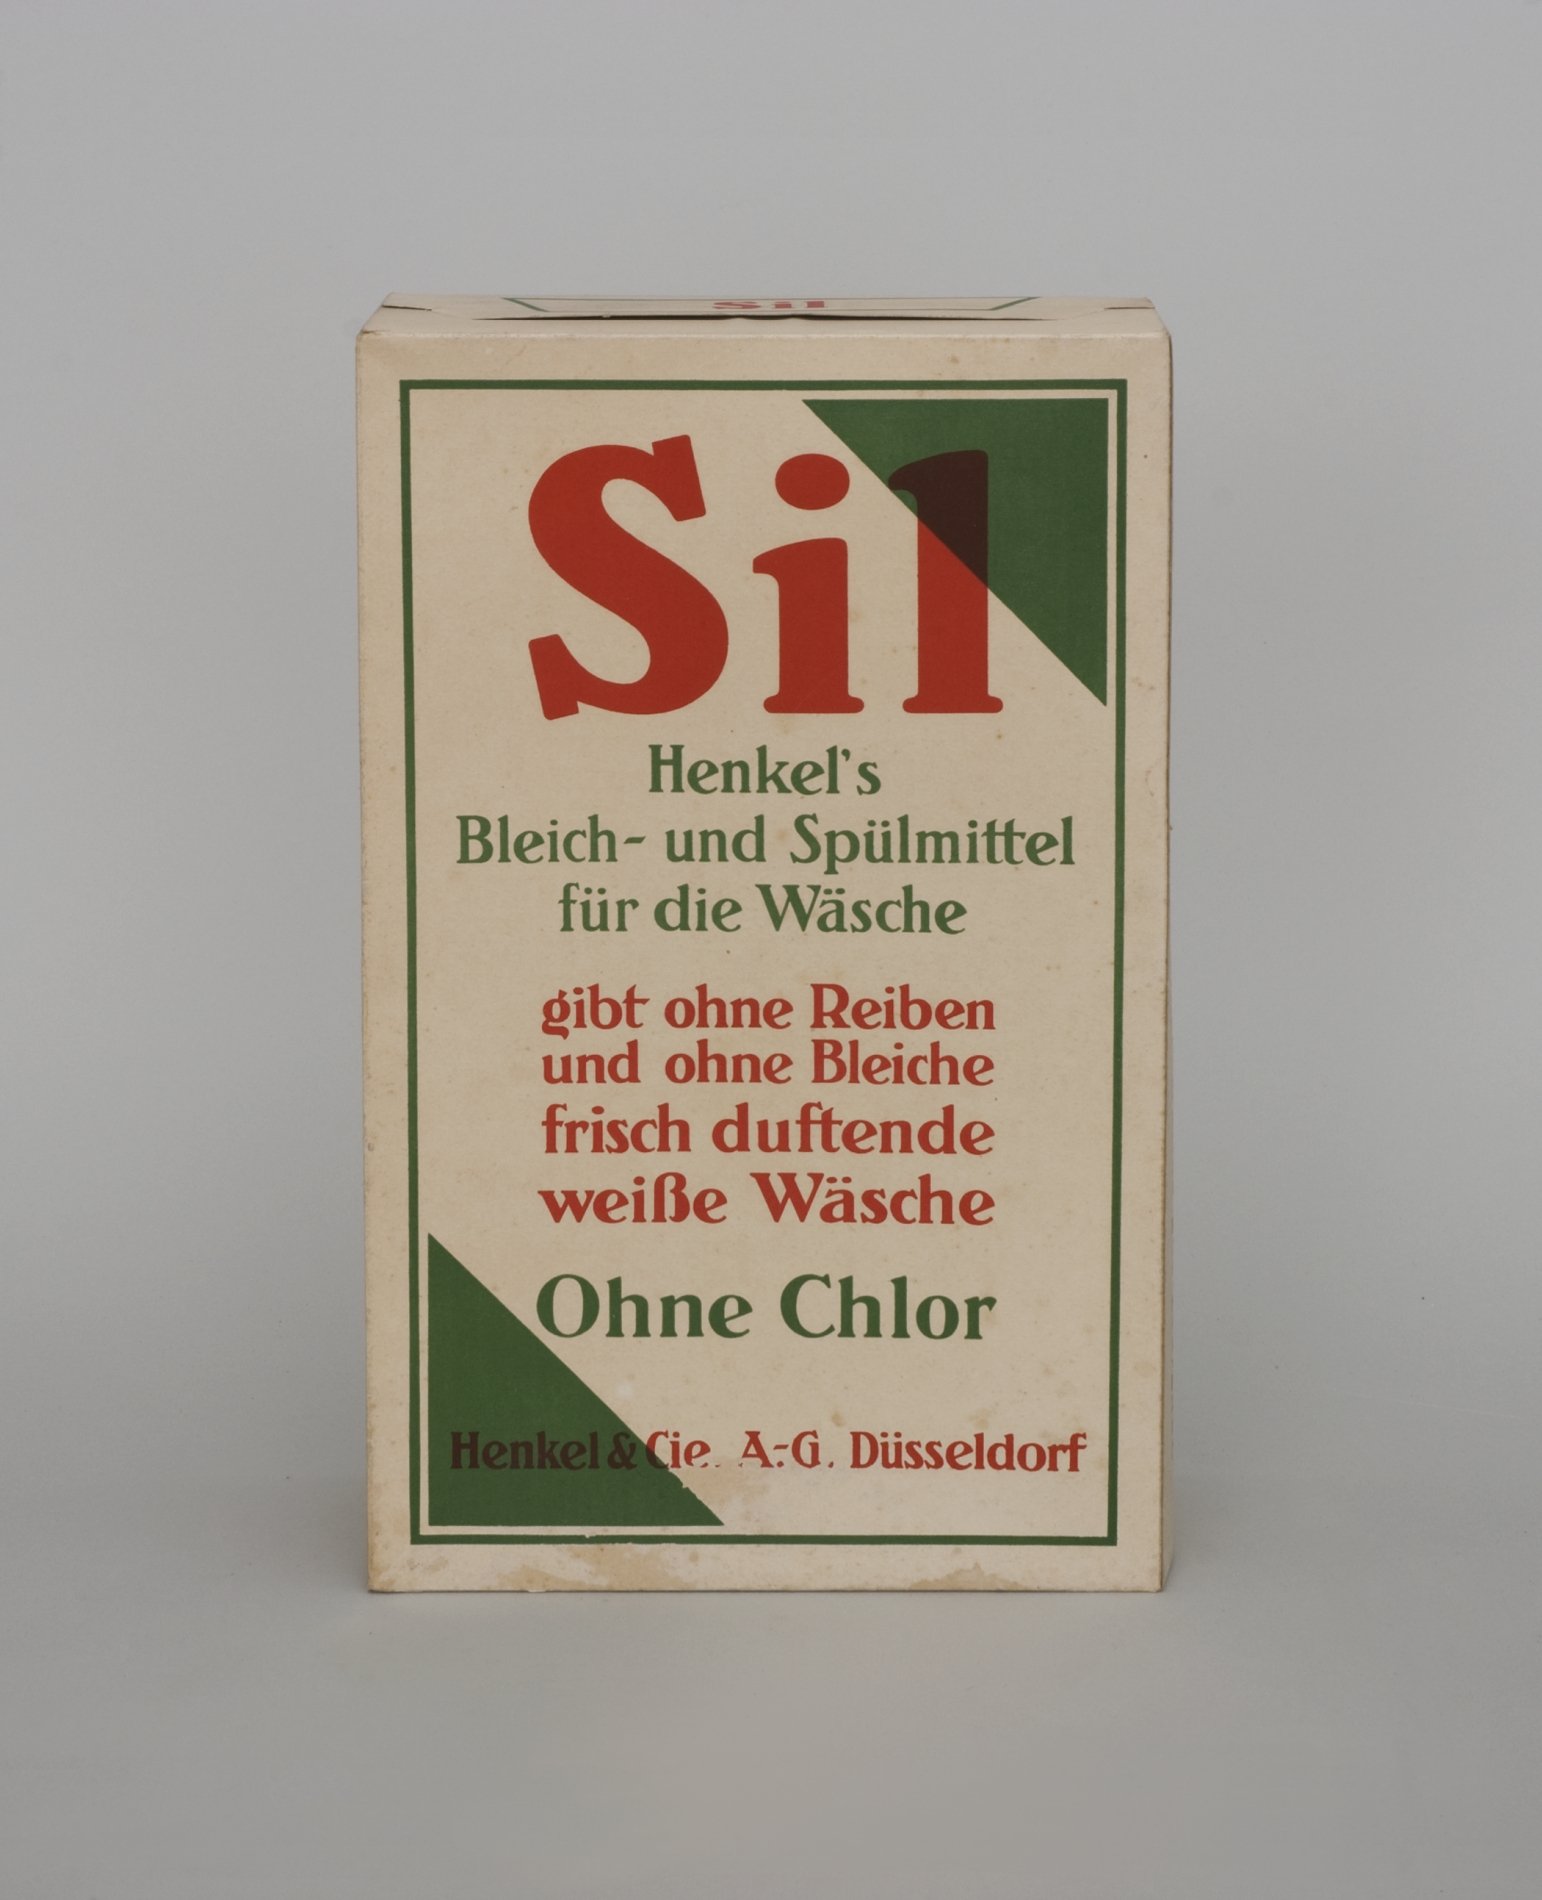 Zwei Schaupackungen "Sil" (Stiftung Domäne Dahlem - Landgut und Museum, Weiternutzung nur mit Genehmigung des Museums CC BY-NC-SA)